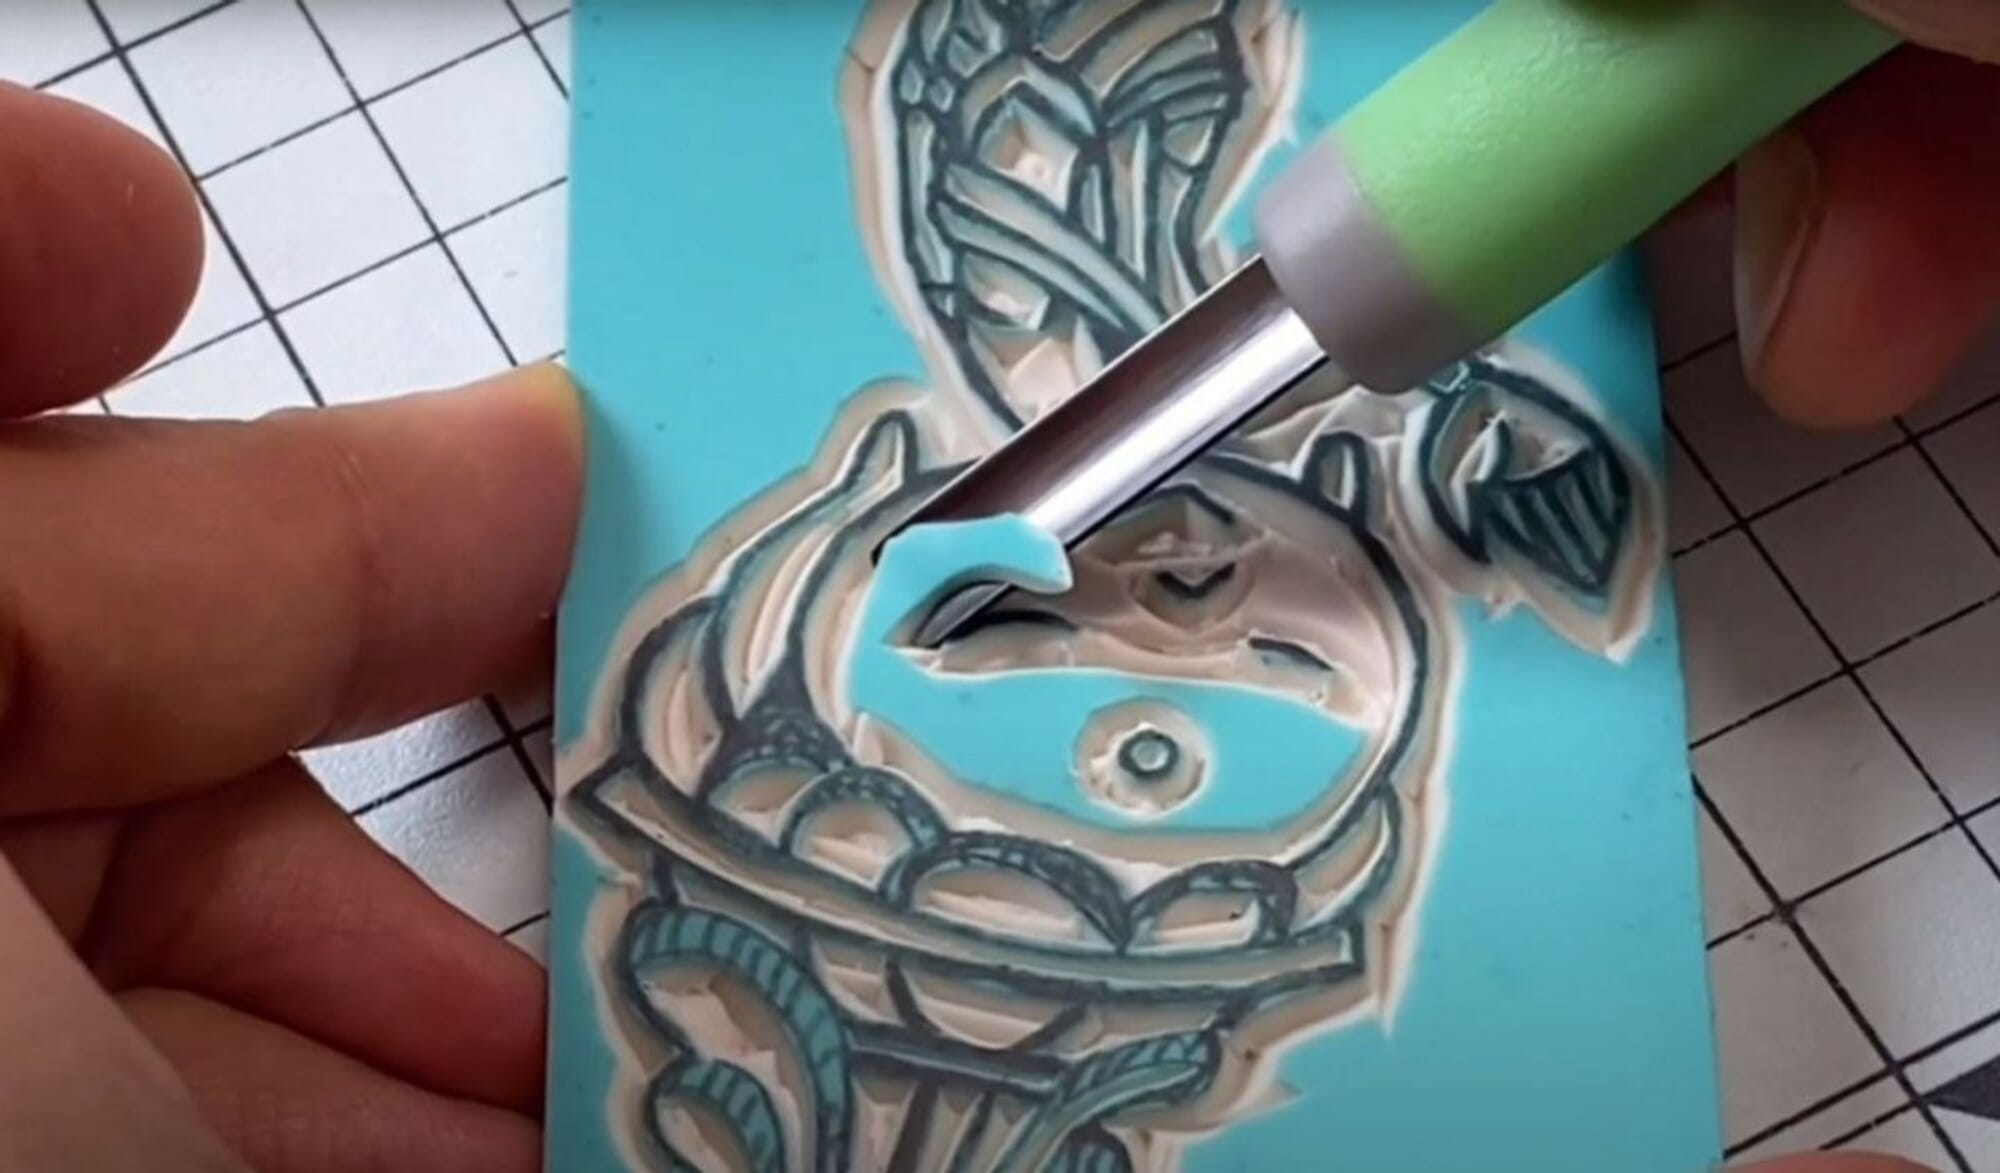 Michihamono Rubber Stamp Making Kit Stamp Carving Tools Starter